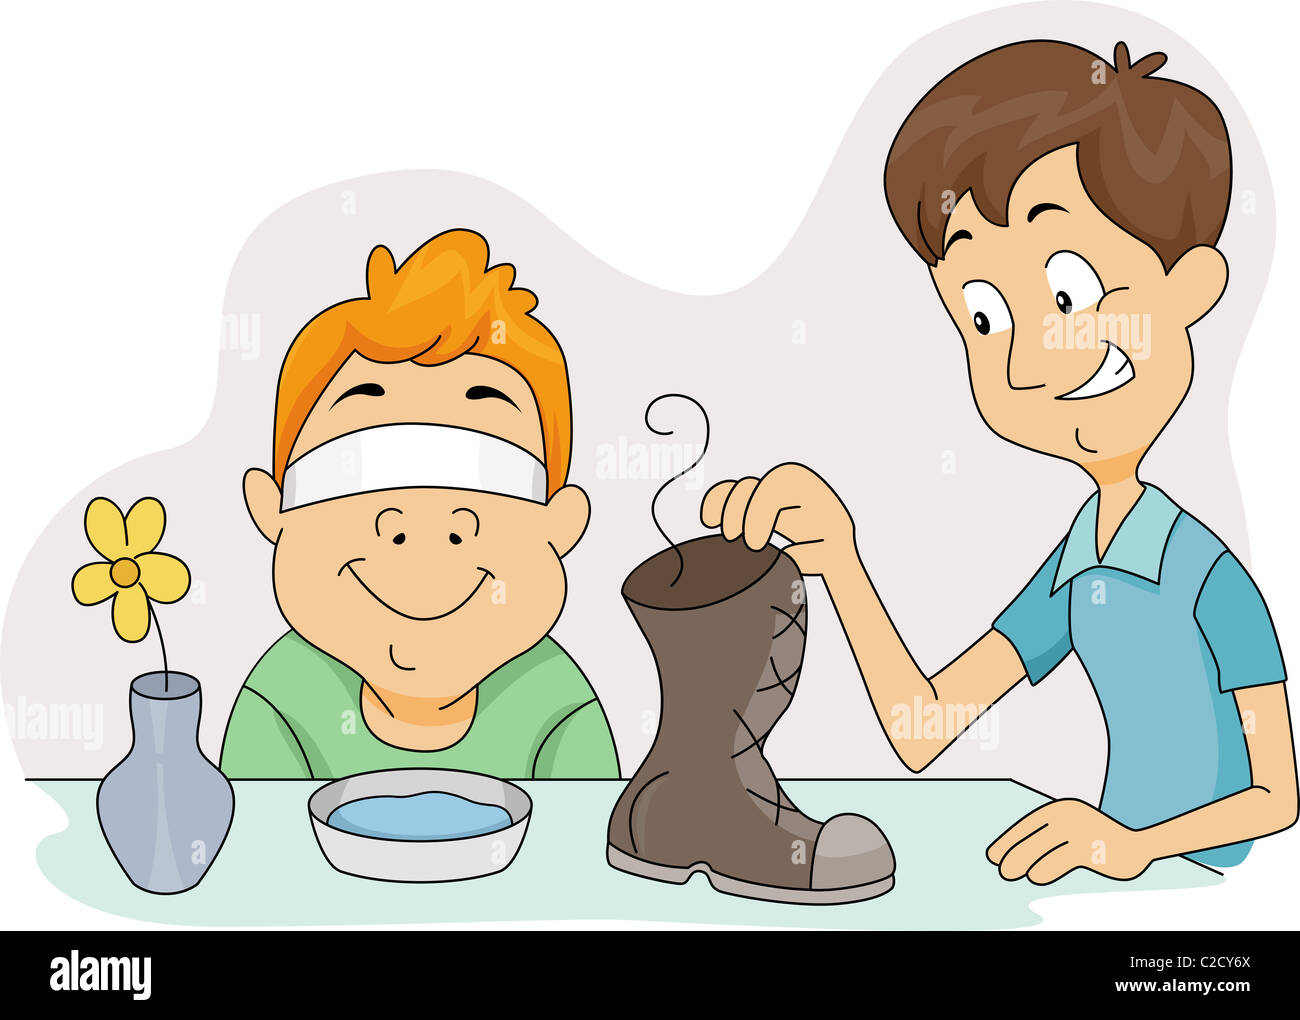 Illustrazione di un ragazzo che sta per annusare una scarpa maleodoranti Foto Stock